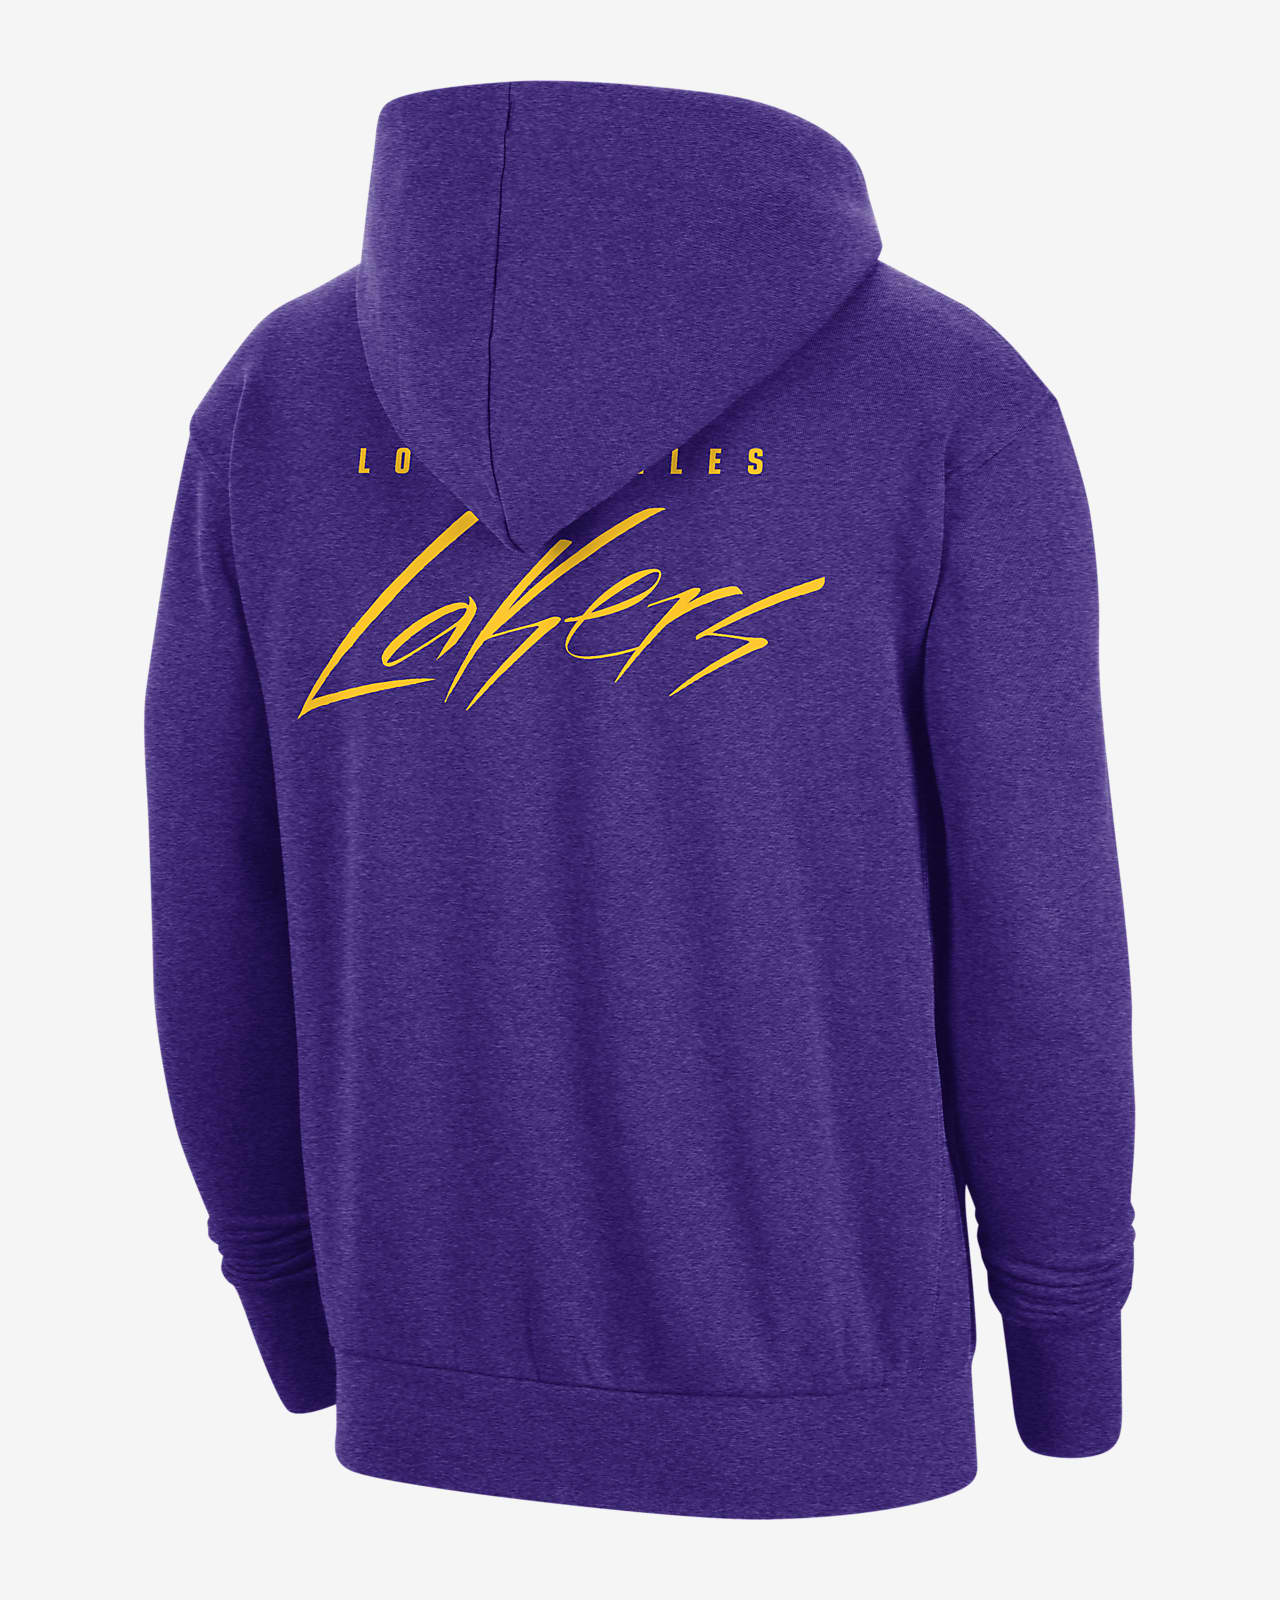 Los Angeles Lakers Nike Sweatshirts, Lakers Hoodies, Fleece